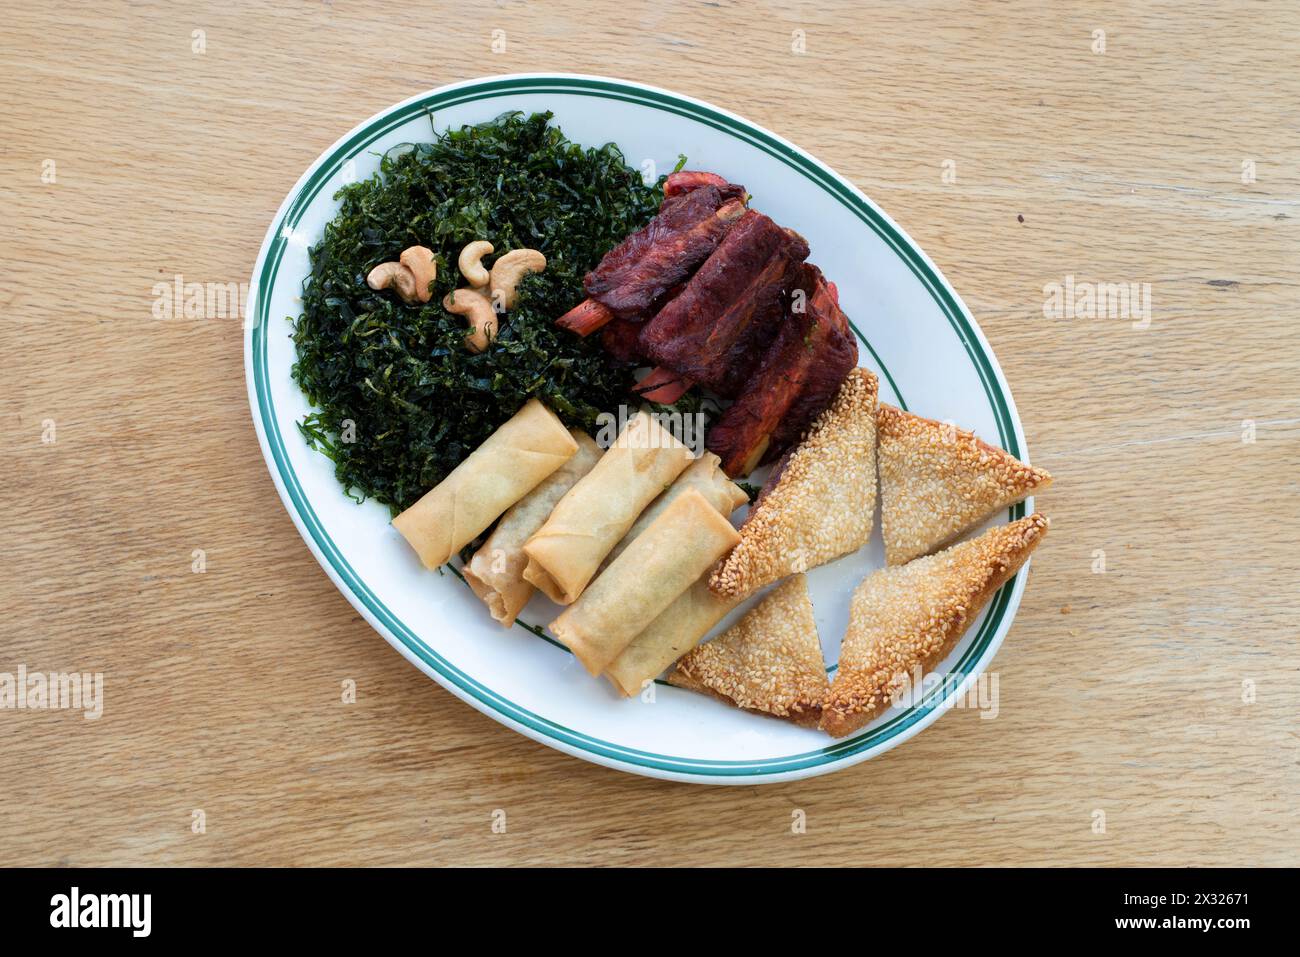 Cuisine chinoise : entrées ou côtés avec rouleaux de printemps, toasts de crevettes, côtes chinoises et algues Banque D'Images